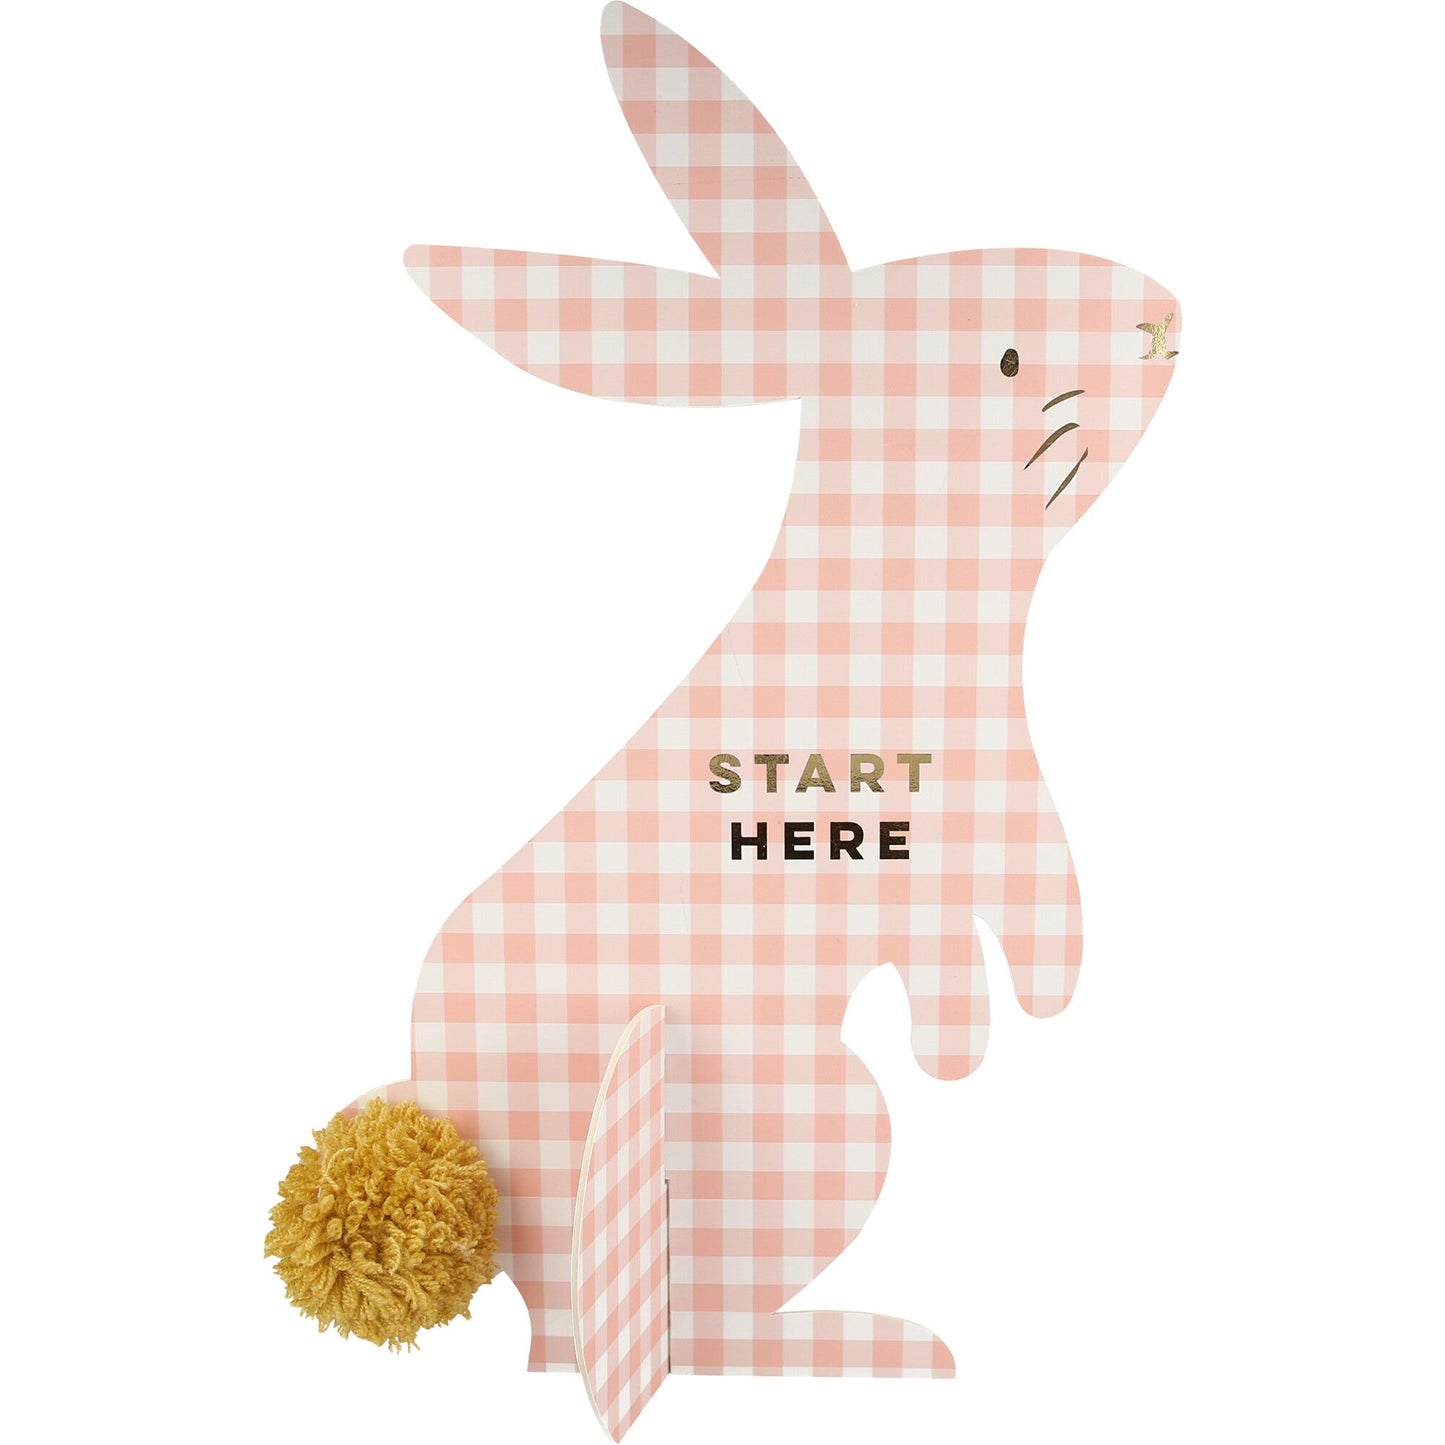 Meri Meri gingham bunny easter egg hunt kit spring fun for kids